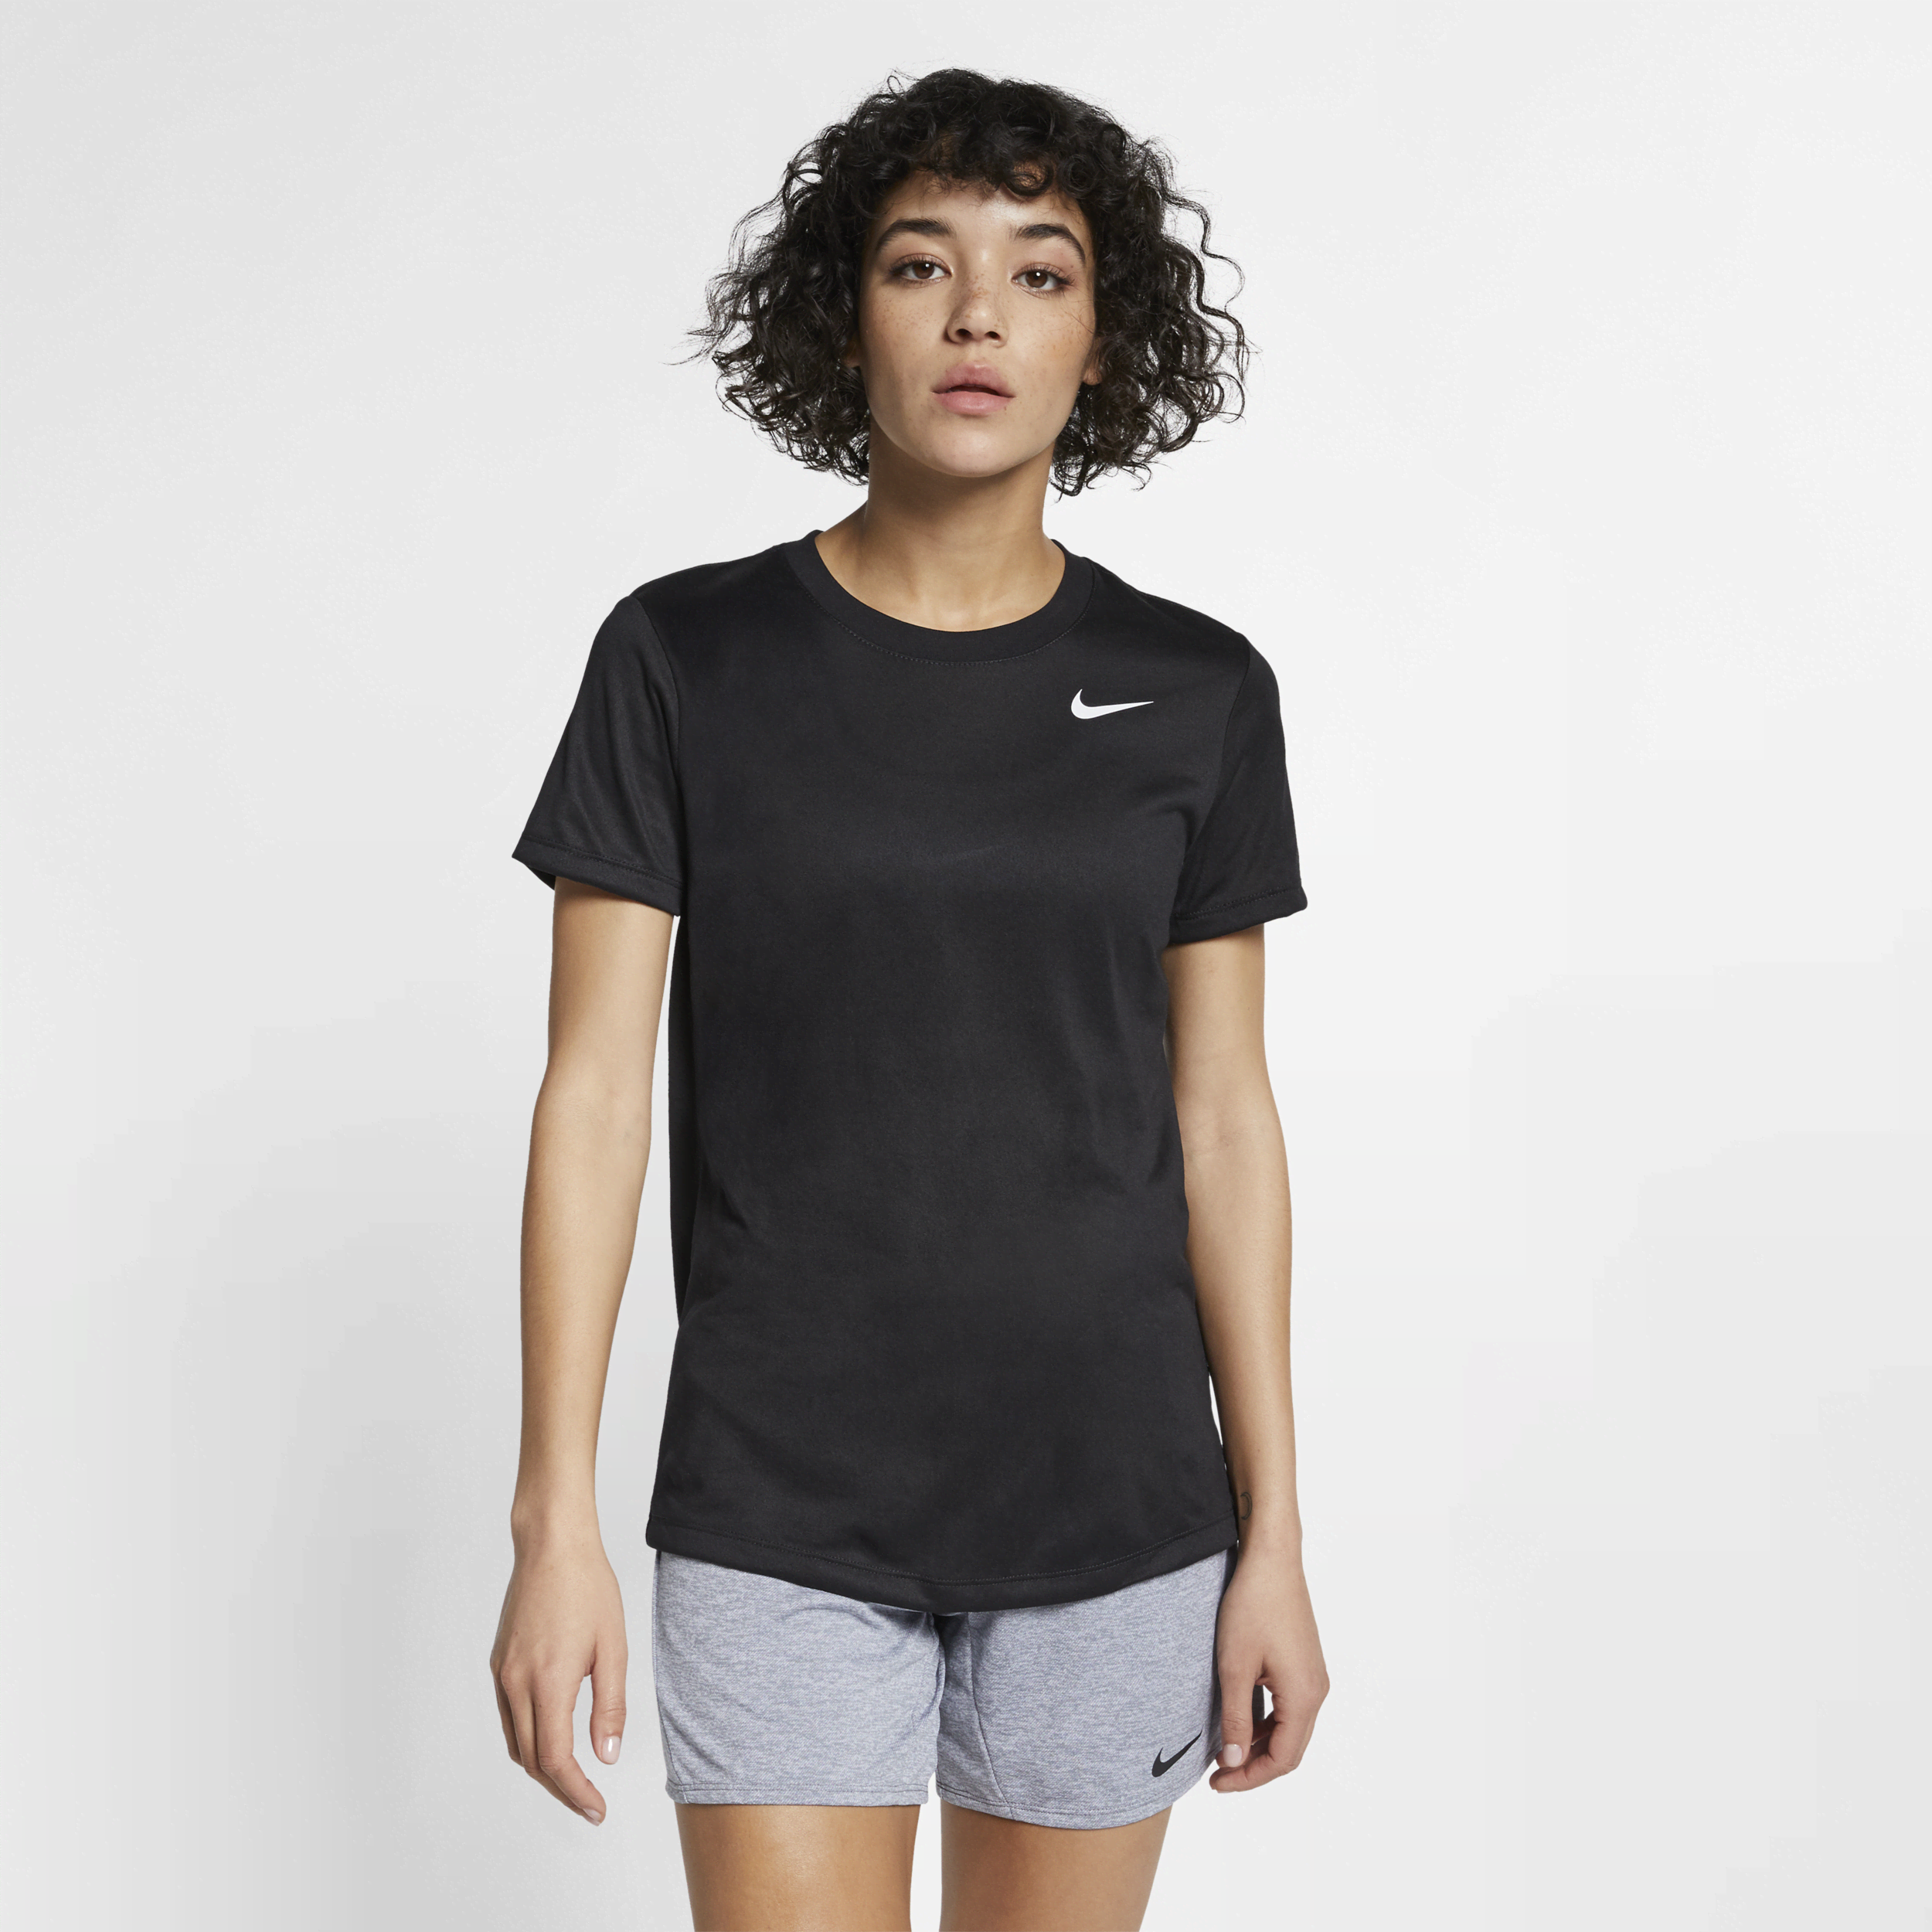 Damski T-shirt treningowy Nike Legend - Czerń